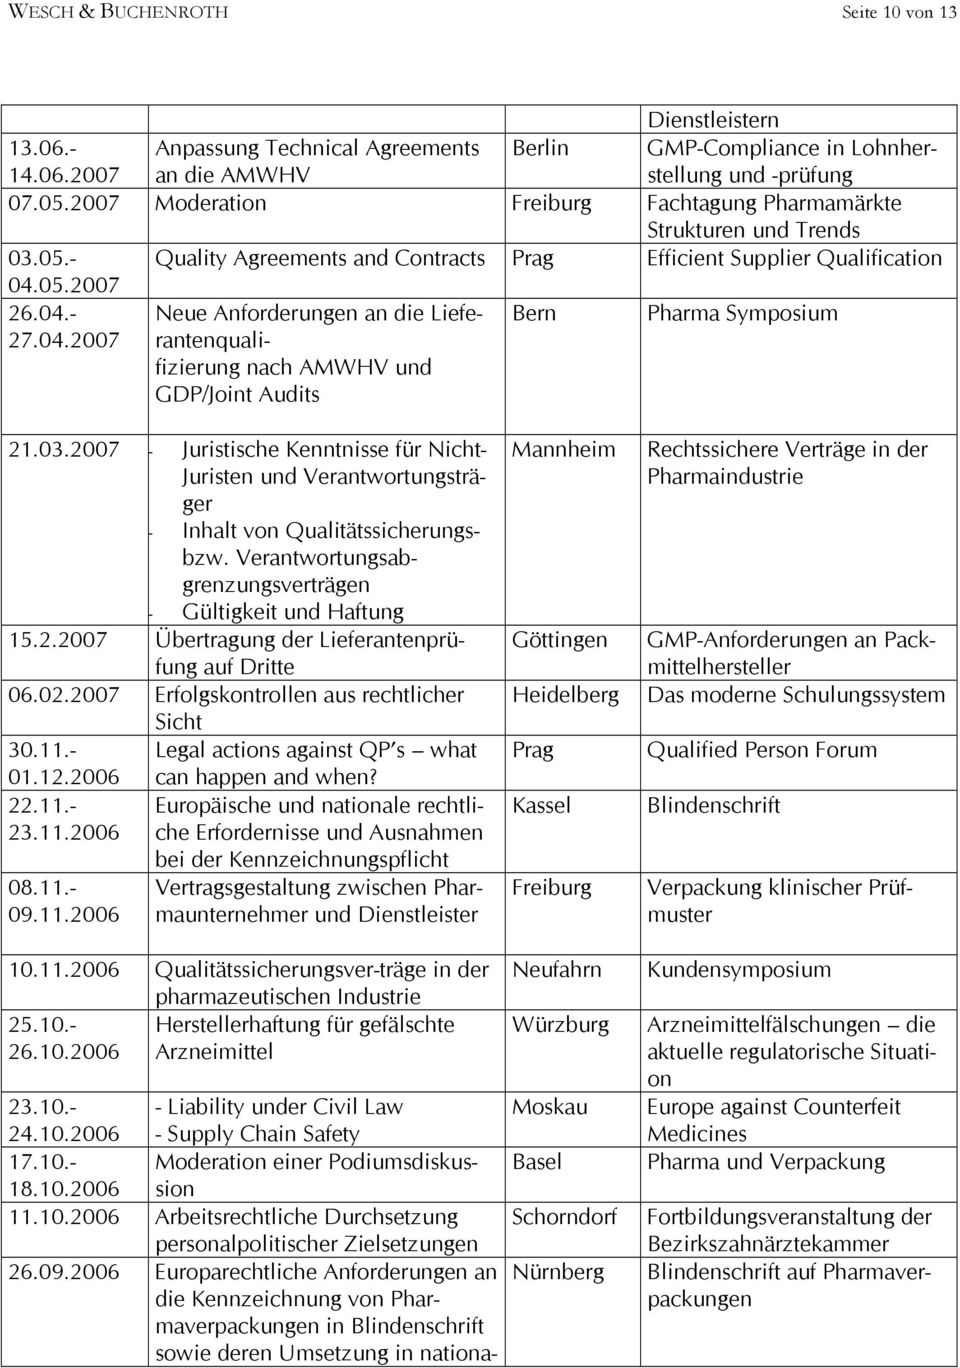 05.2007 26.04.- 27.04.2007 Neue Anforderungen an die Lieferantenqualifizierung nach AMWHV und GDP/Joint Audits Bern Pharma Symposium 21.03.